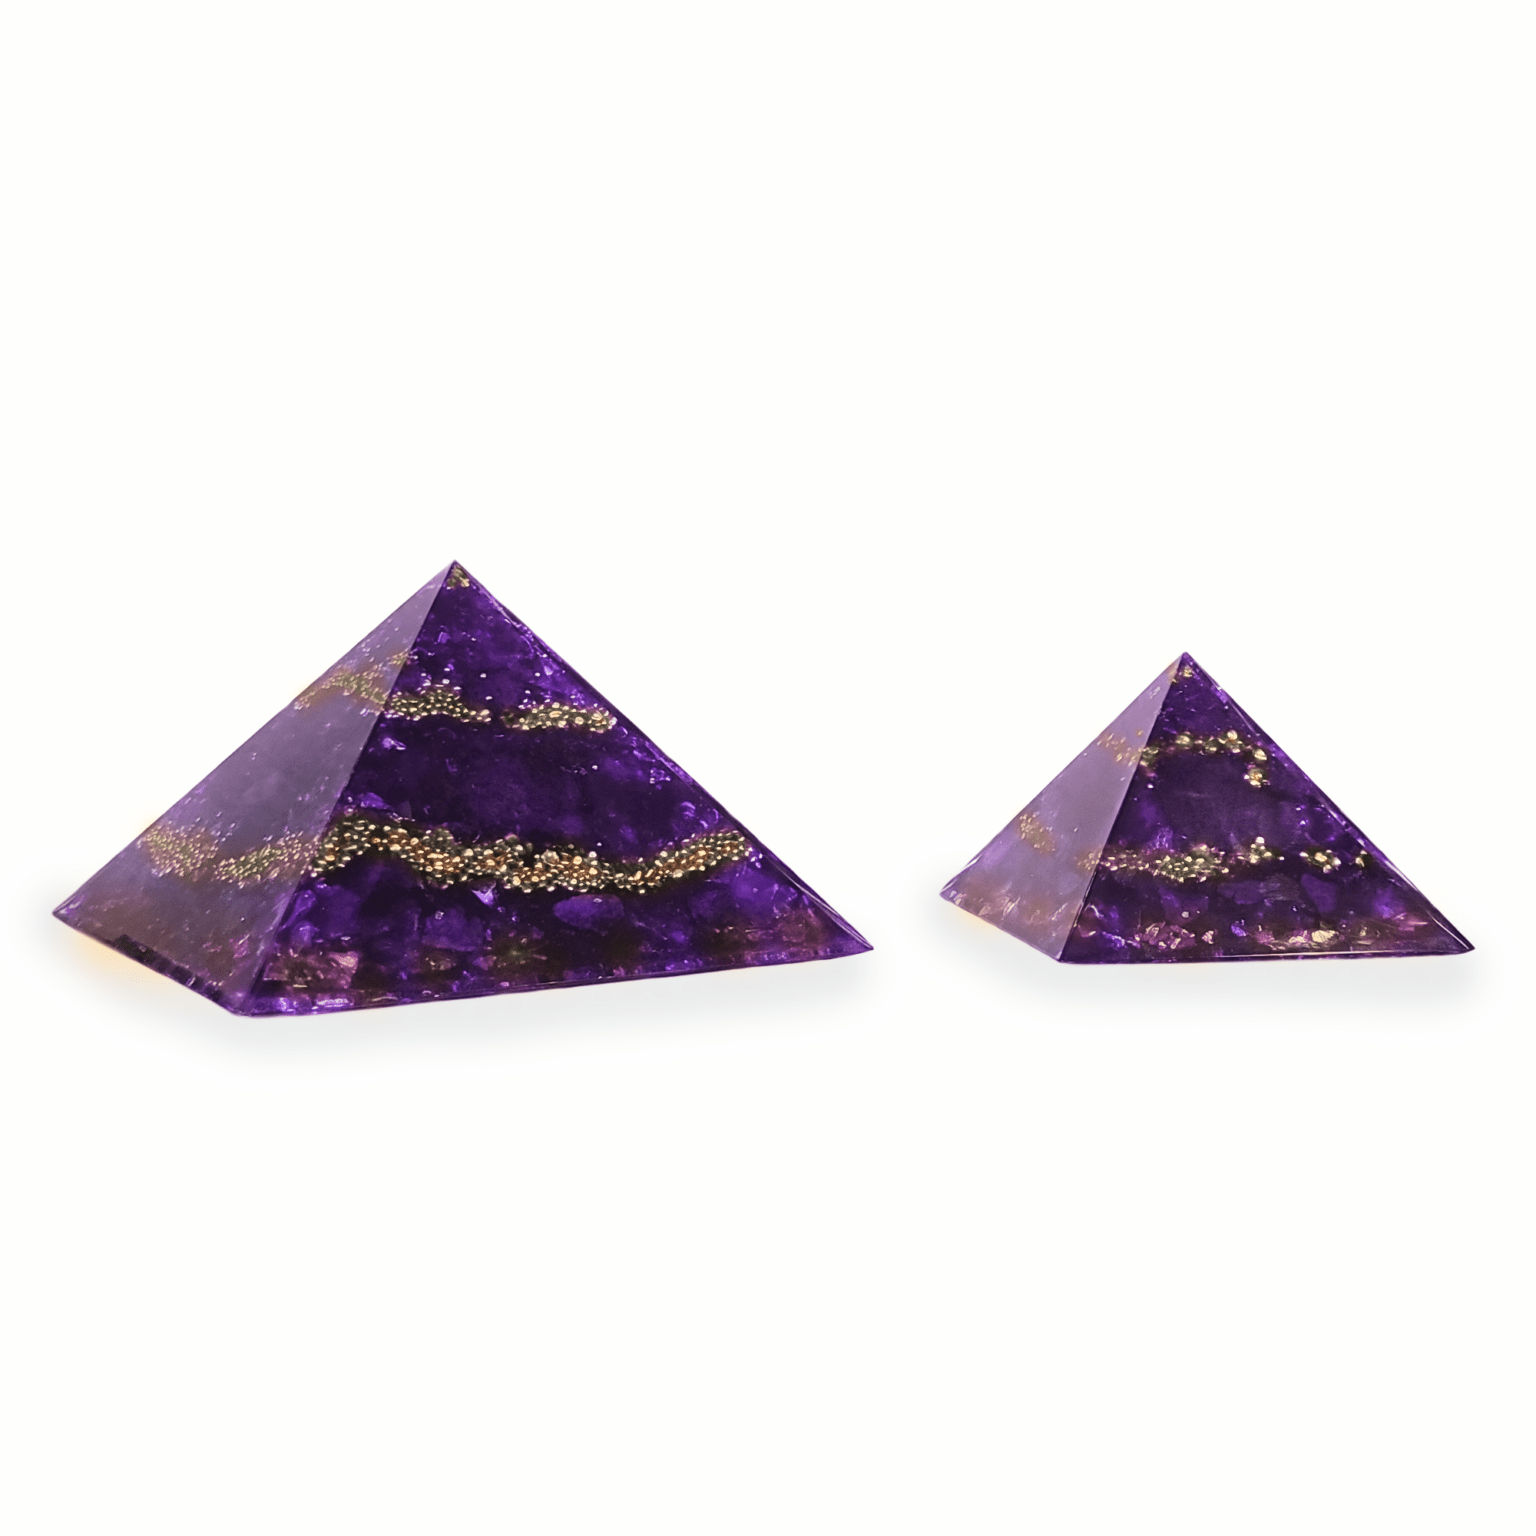 Eine große XXL Orgonit Pyramide, sowie ein mittelgroßer Orgonit mit den Edelsteinen Amethyst, Charoit & Bergkristall. Die Orgoniten sind lila mit goldenen Metallelementen.